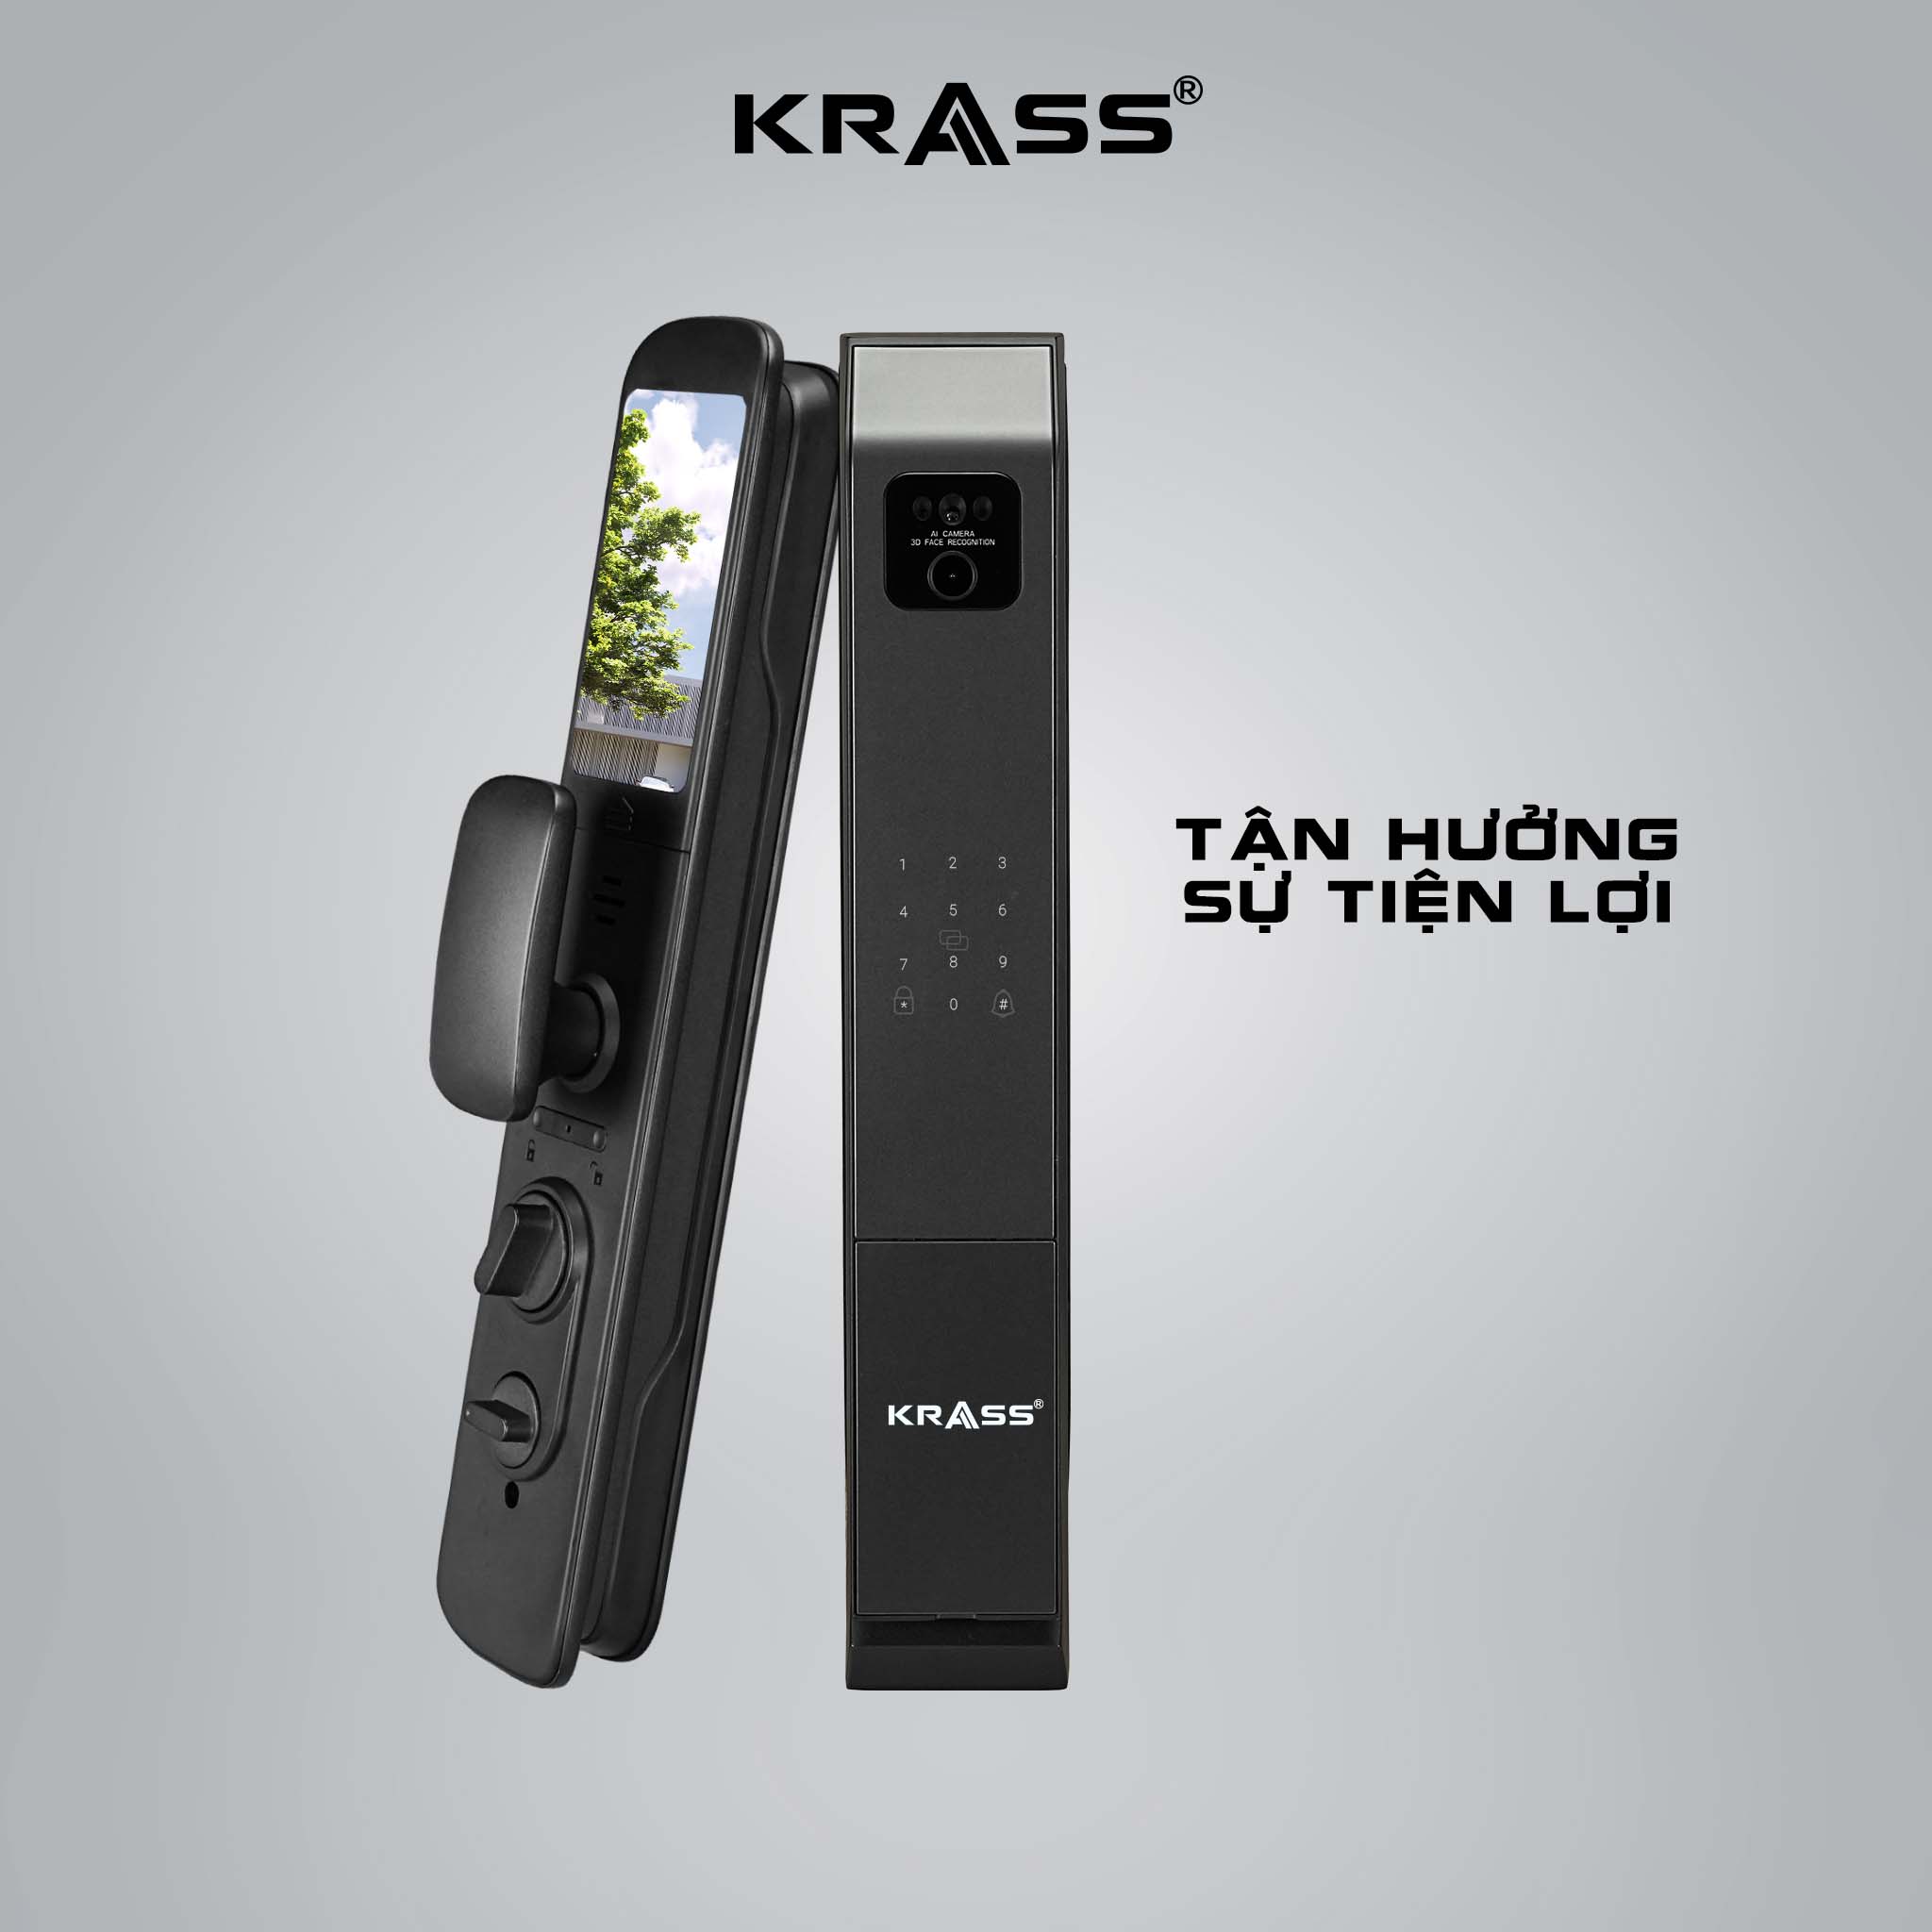 Thiết kế sang trọng chuẩn châu Âu của Krass H120